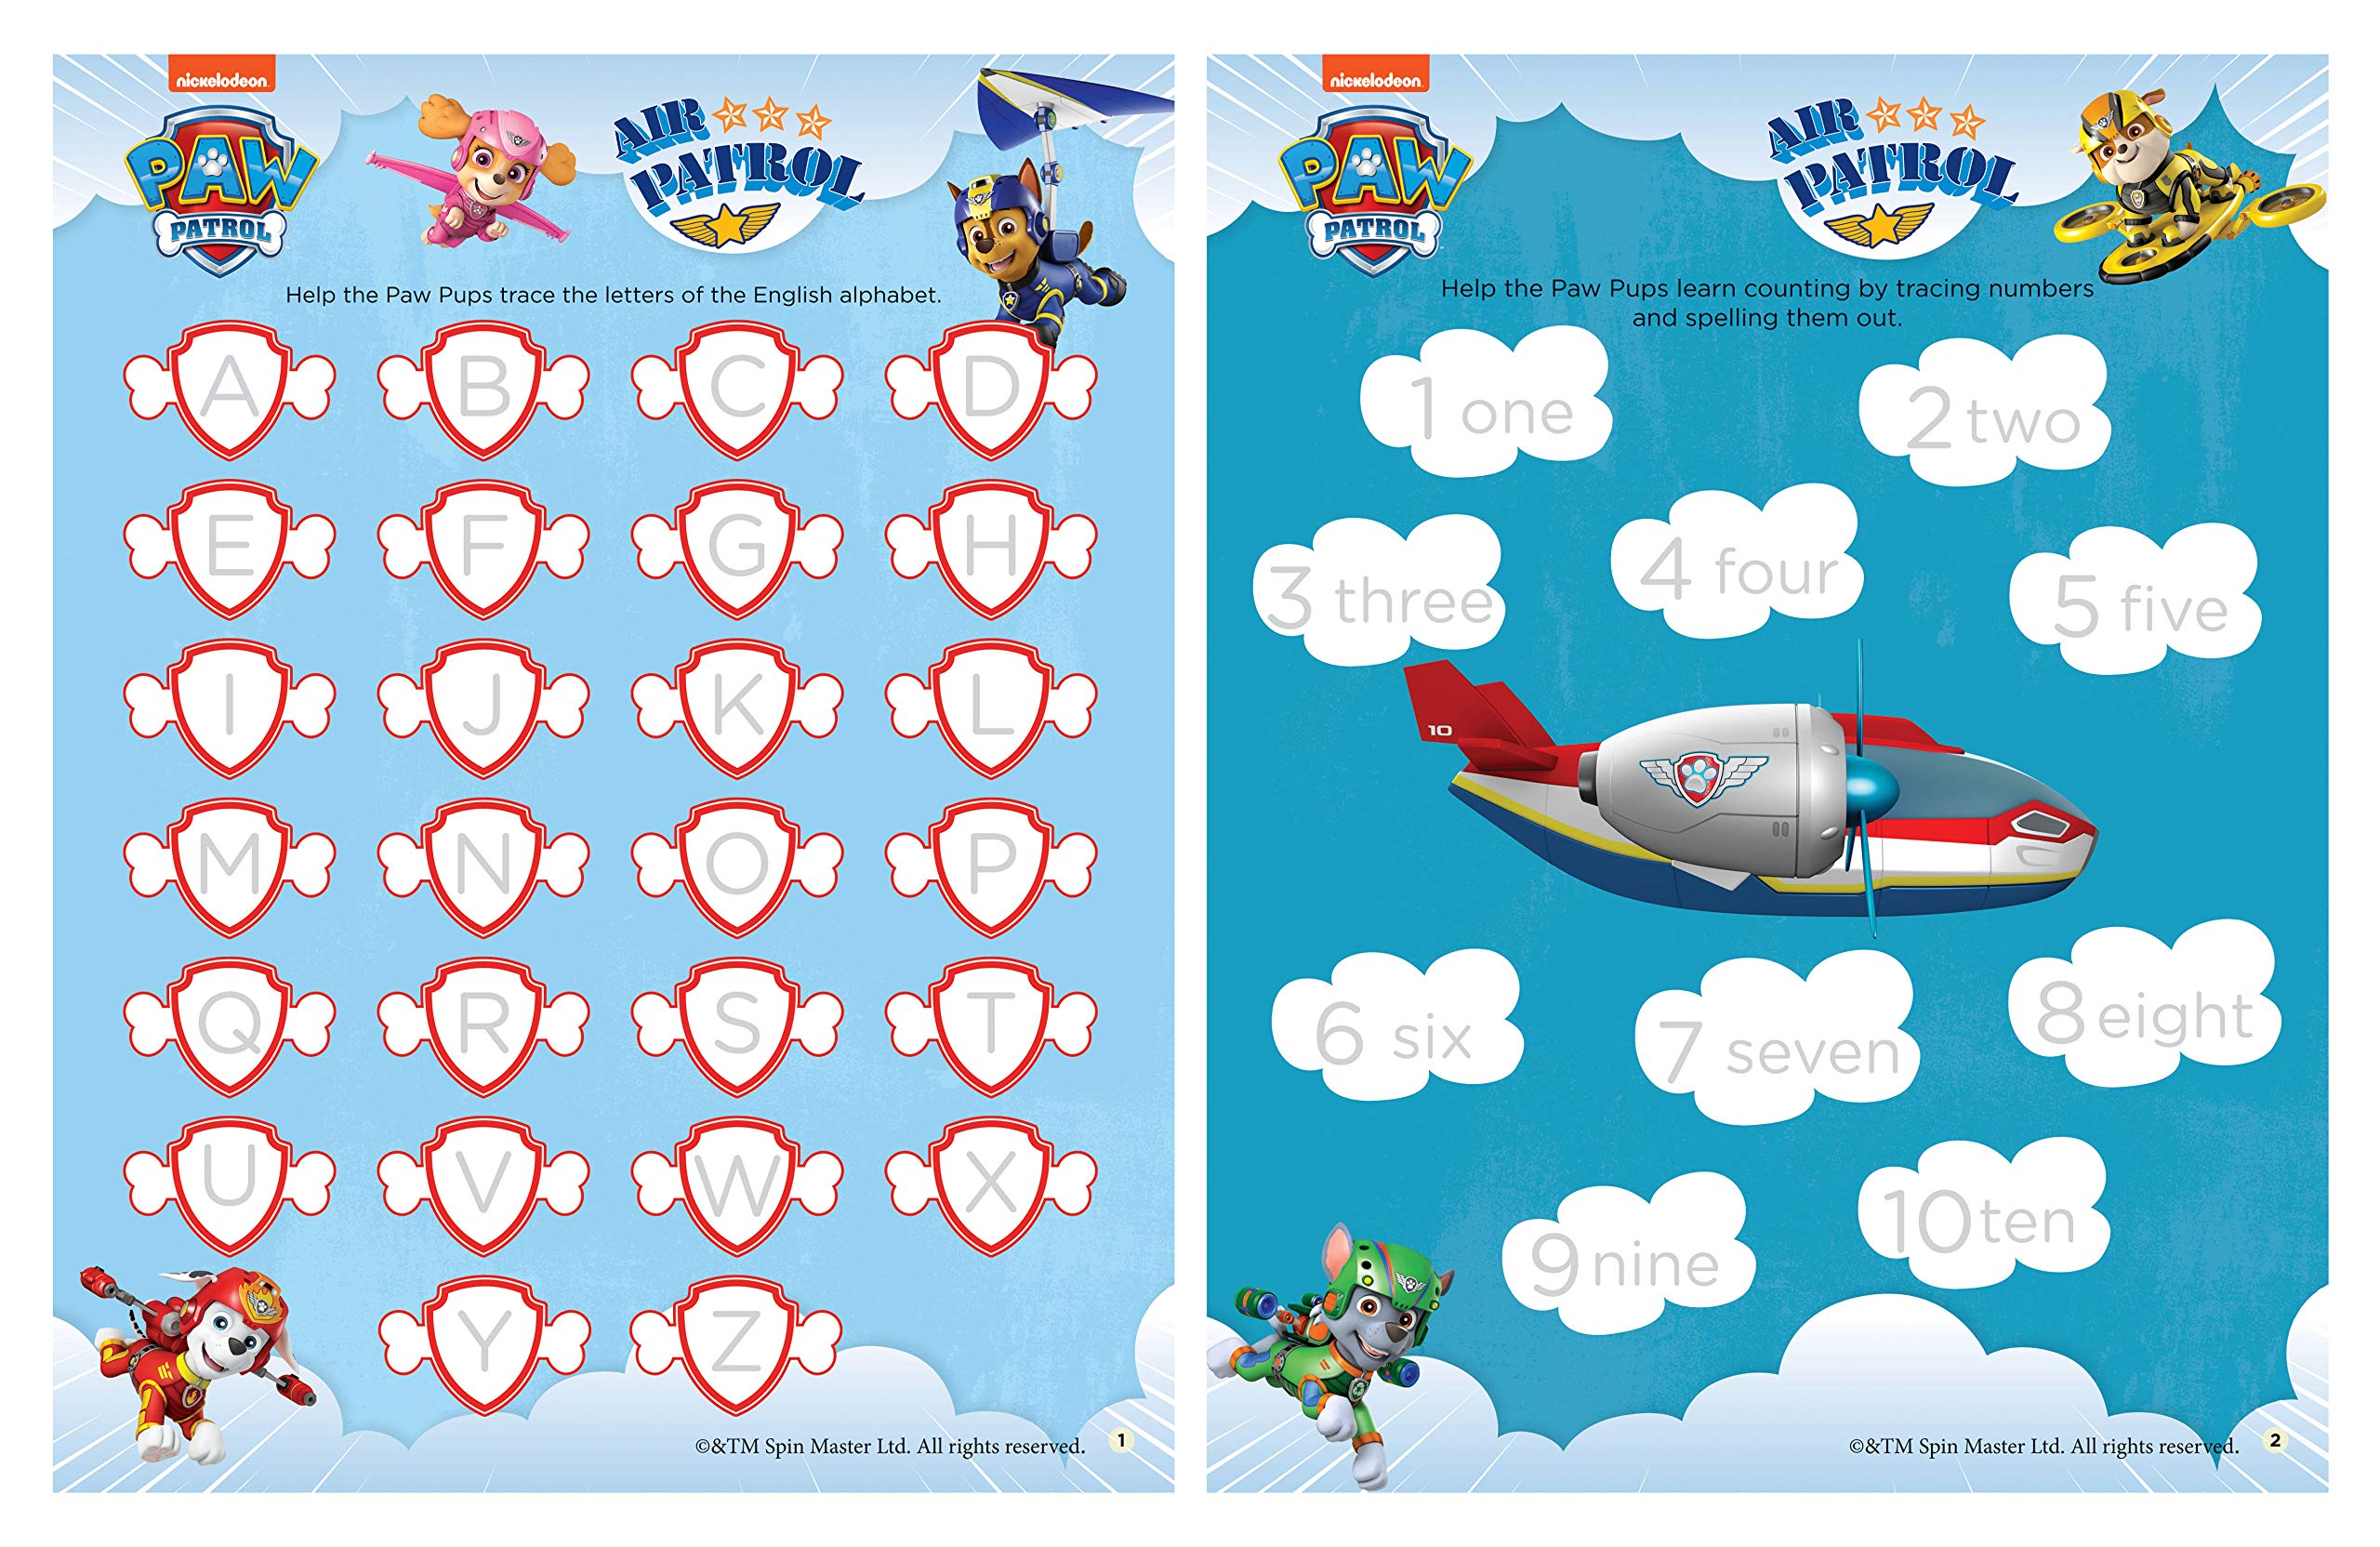 Nickelodeon Paw Patrol - Air Patrol Heroes Of The Sky! : Fun Learning Set